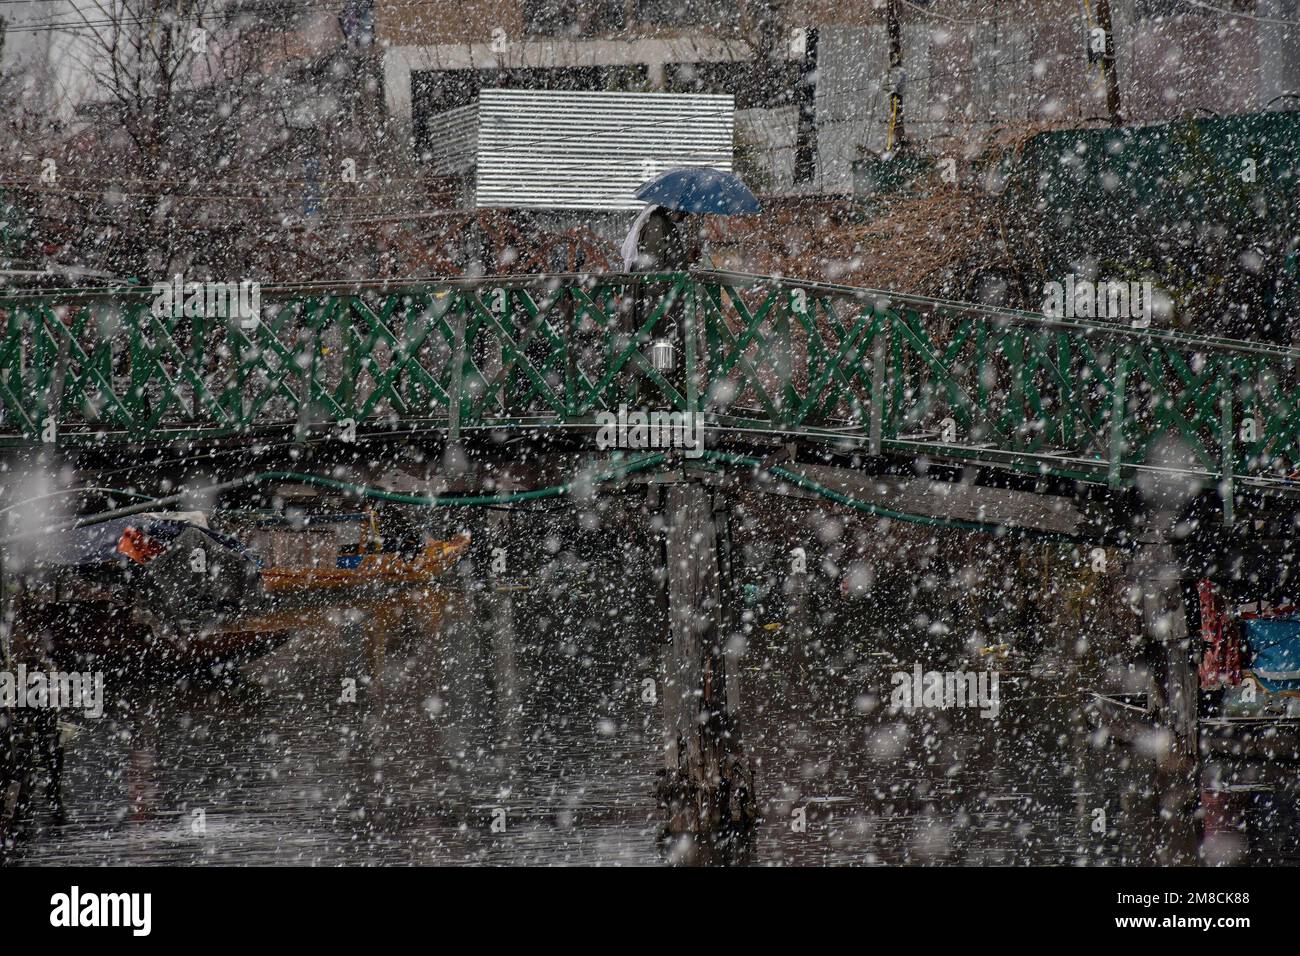 Un residente tiene un ombrello mentre cammina attraverso il ponte pedonale di legno durante le nevicate. Parti della valle di Kashmir compreso Srinagar ha ricevuto nevicate che portano alla chiusura della vitale Srinagar-Jammu autostrada nazionale e la cancellazione delle operazioni di volo, funzionari qui ha detto. Foto Stock